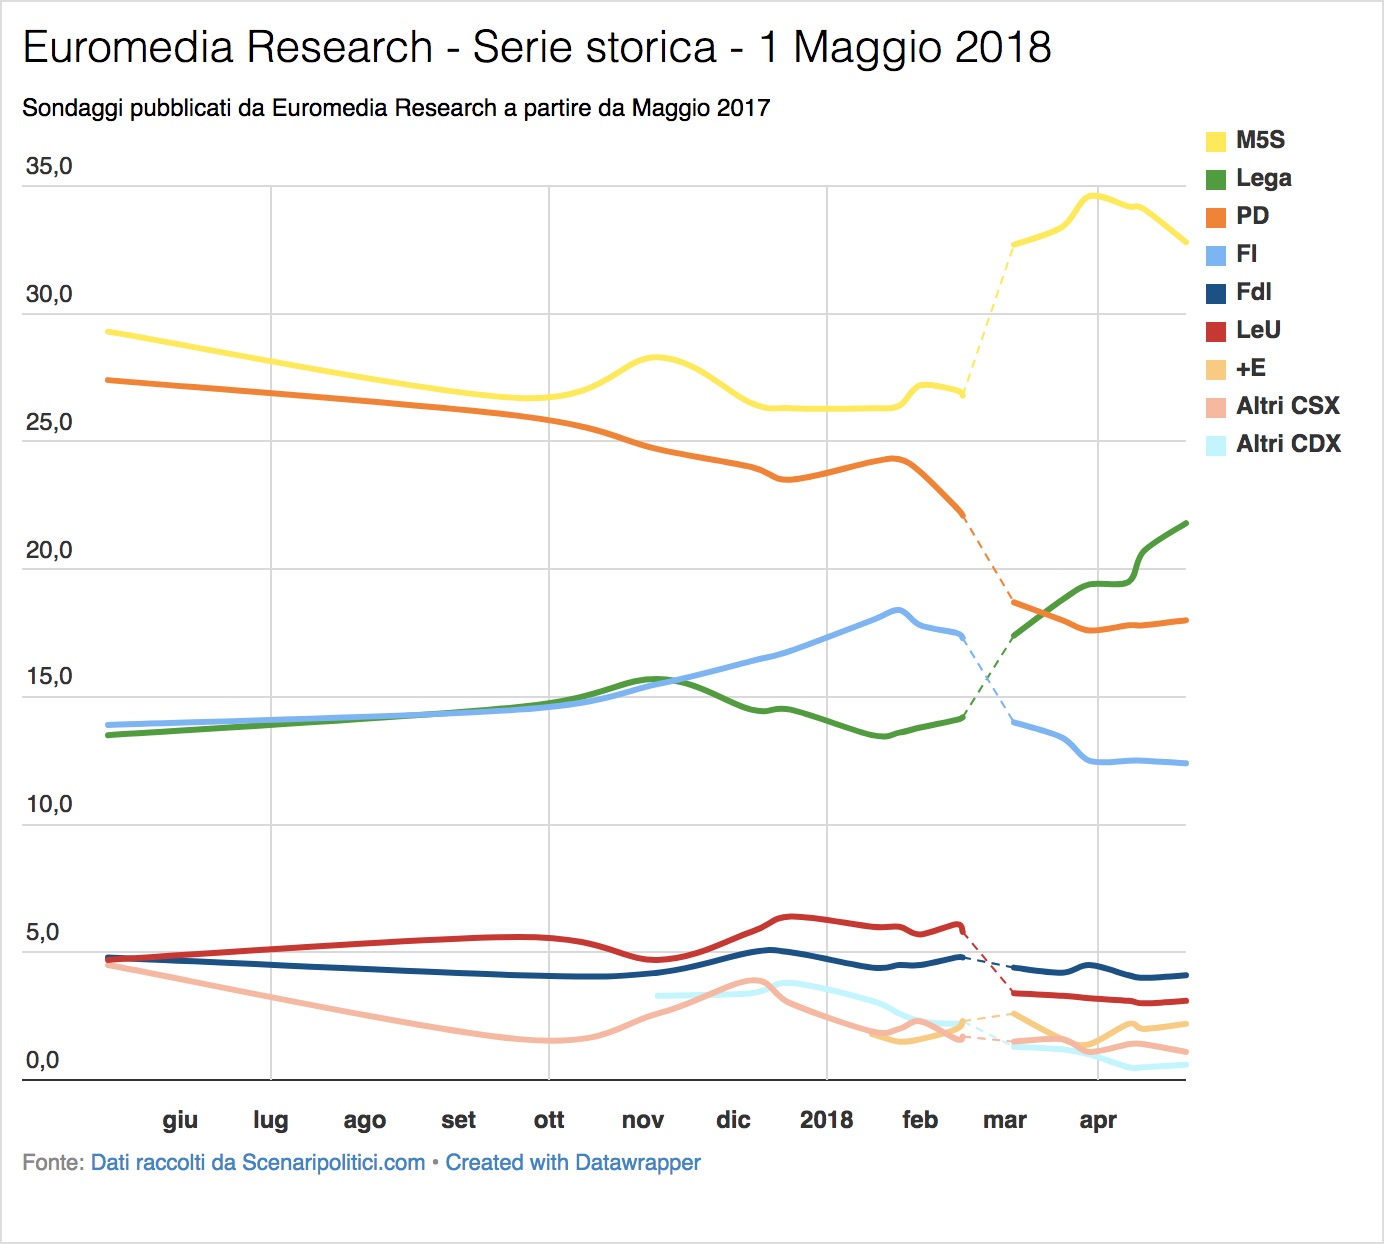 Sondaggi Euromedia Research & Piepoli (1 Maggio 2018)